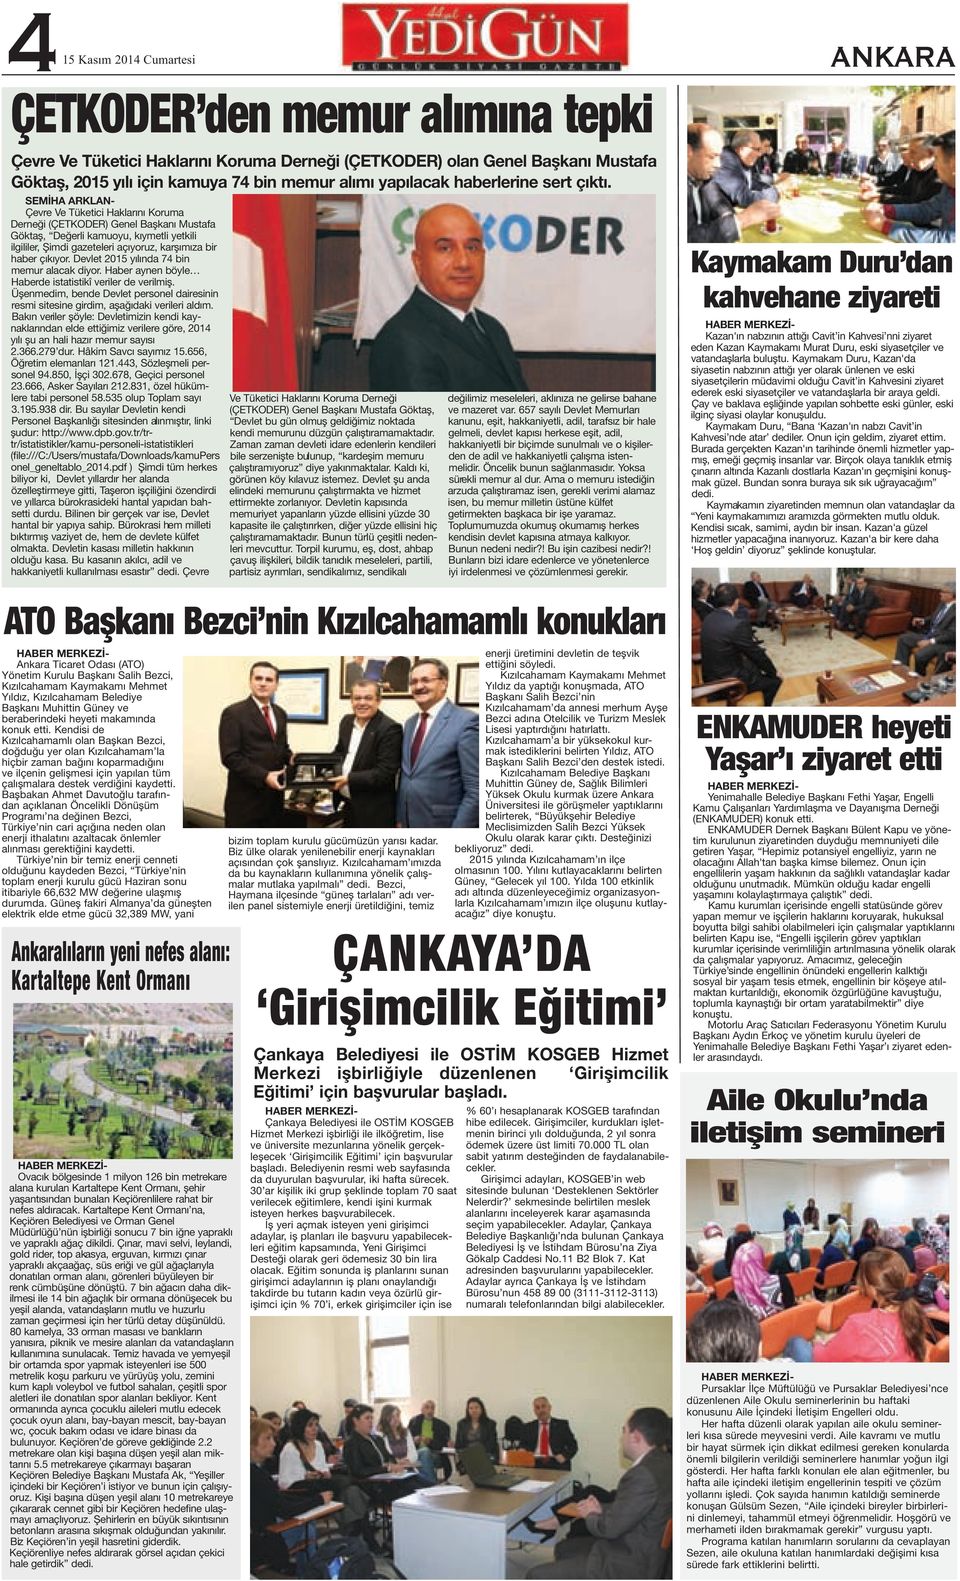 SEMİHA ARKLAN- Çevre Ve Tüketici Haklarını Koruma Derneği (ÇETKODER) Genel Başkanı Mustafa Göktaş, Değerli kamuoyu, kıymetli yetkili ilgililer, Şimdi gazeteleri açıyoruz, karşımıza bir haber çıkıyor.